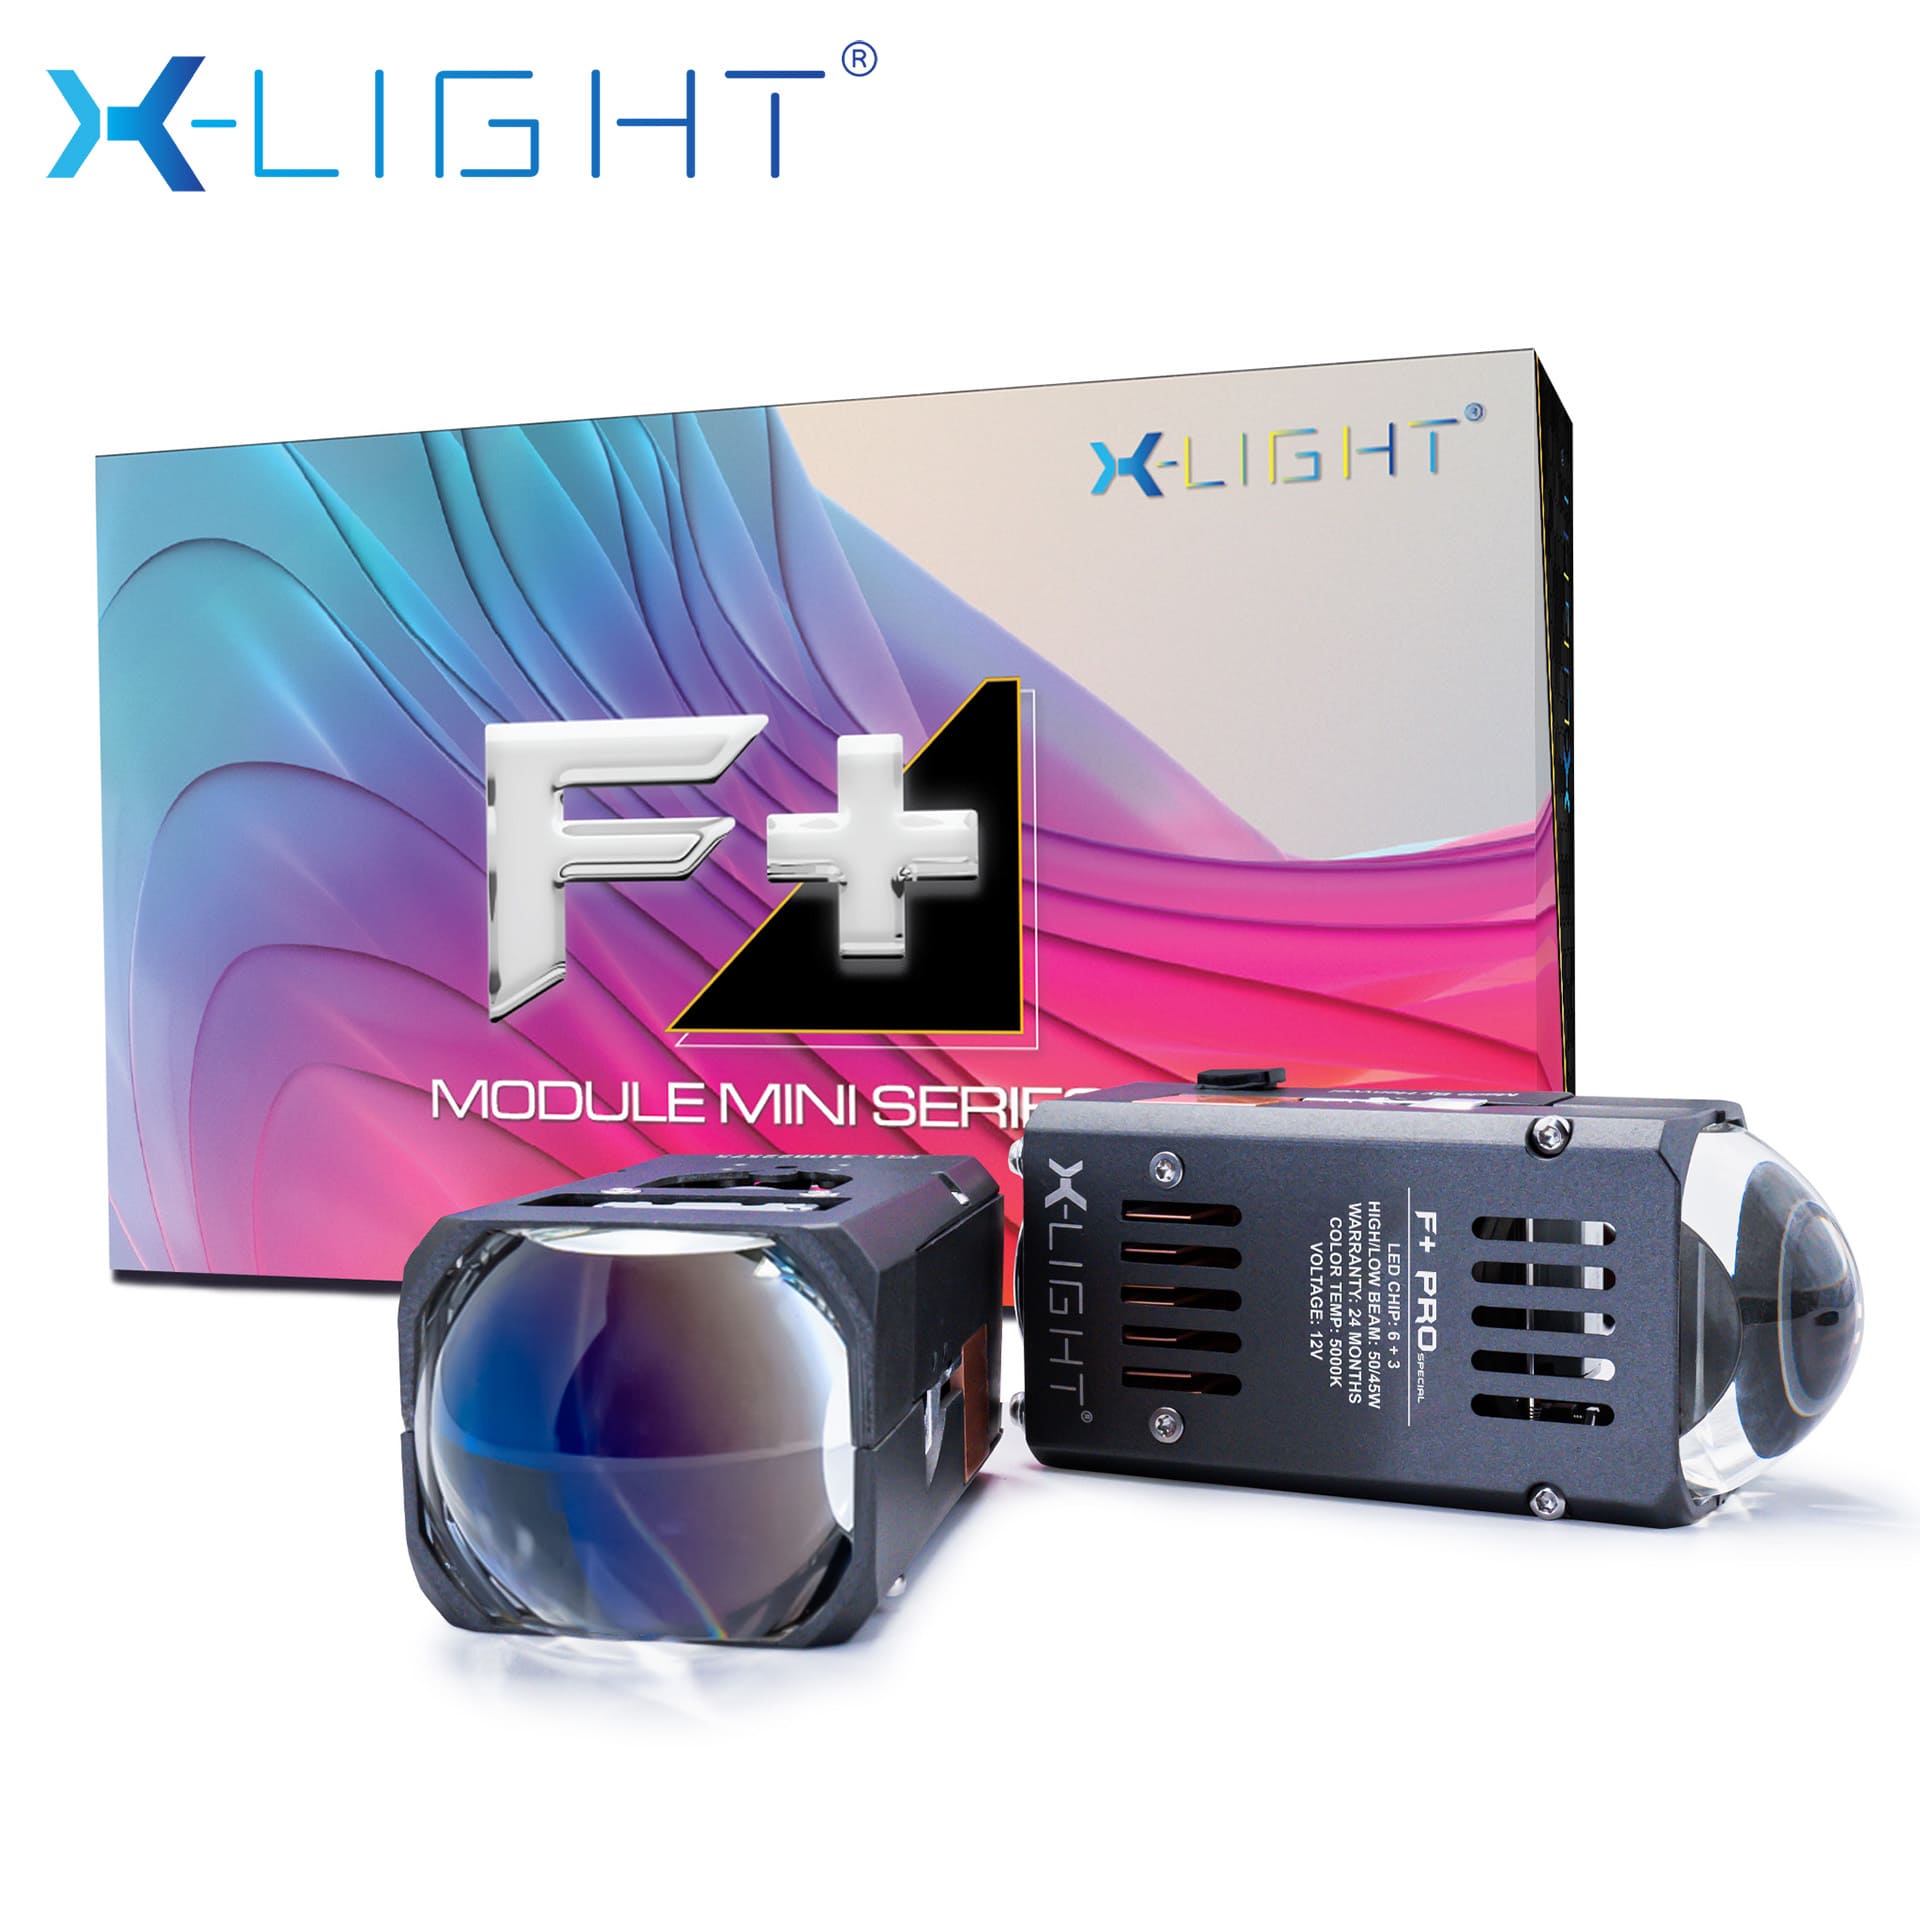 MODULE BI LED MINI X-LIGHT F+ PRO SPECIAL 5000K